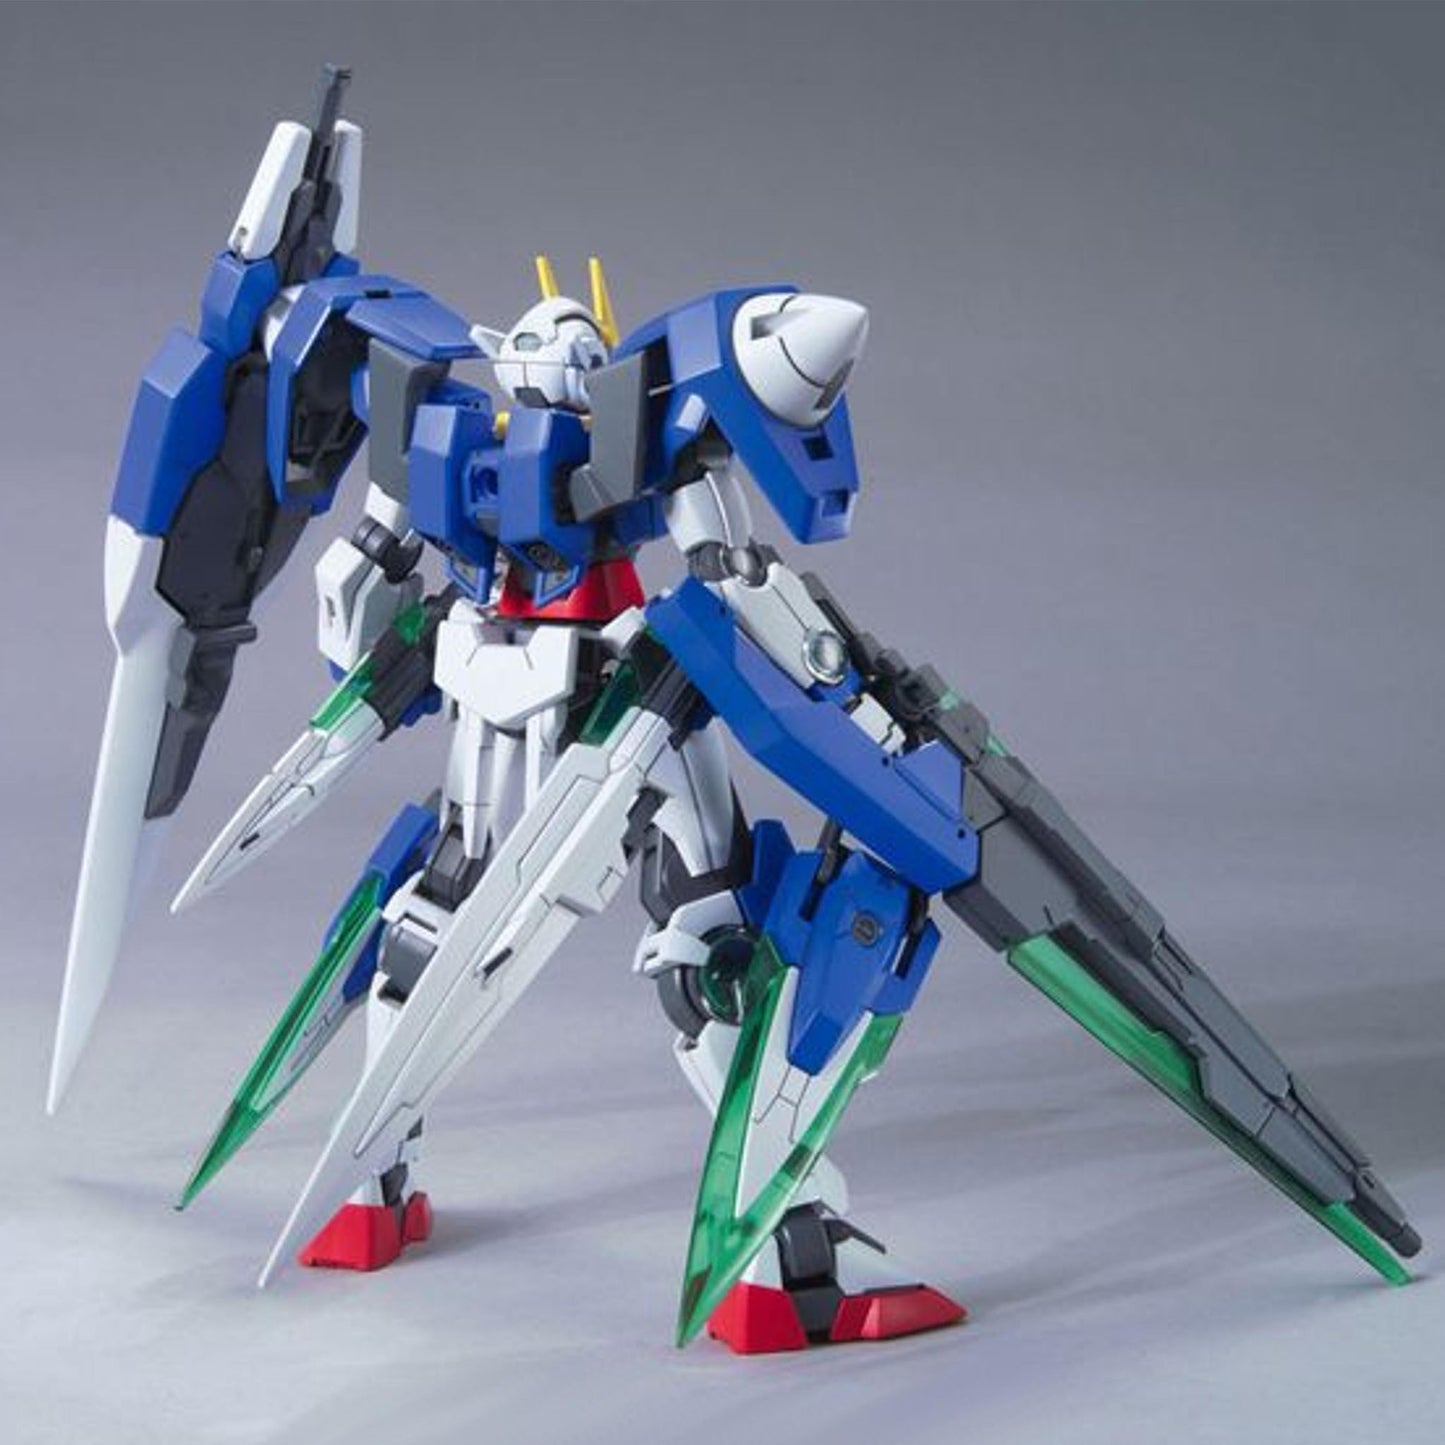 HG 00 Gundam Seven Sword/G Gunpla Model Kit